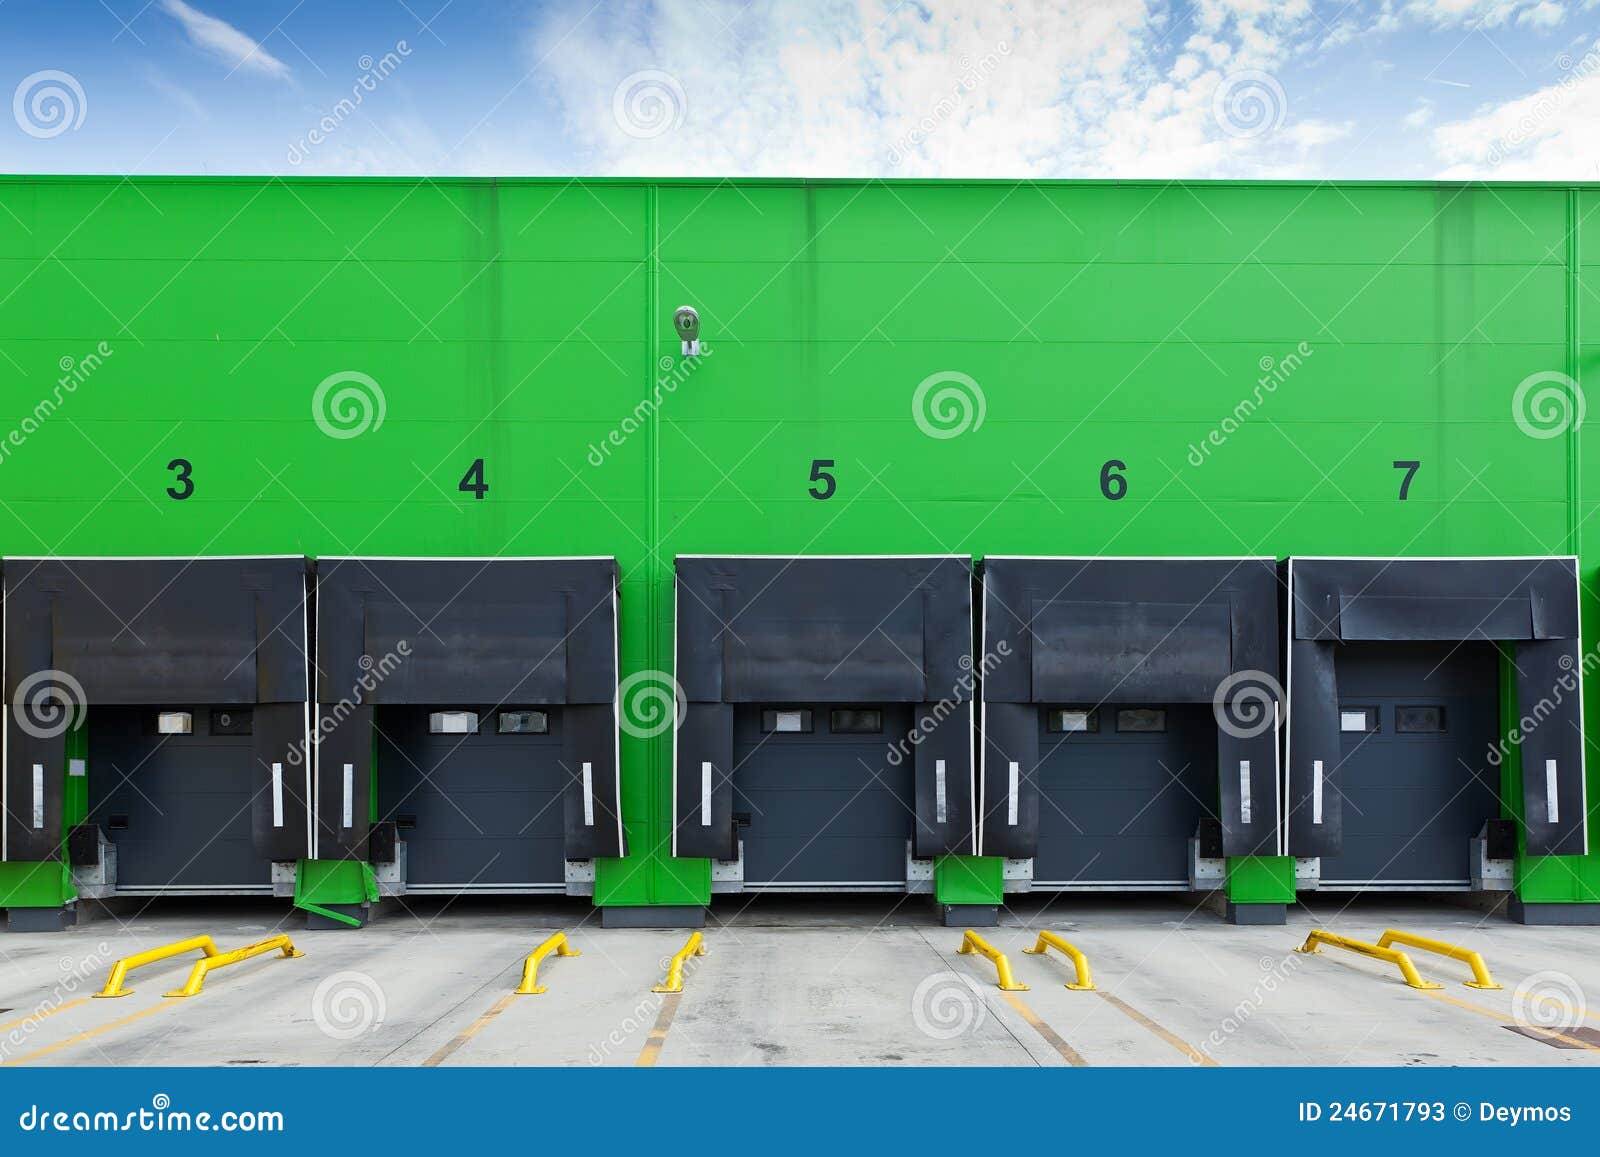 loading docks in industrial warehouse